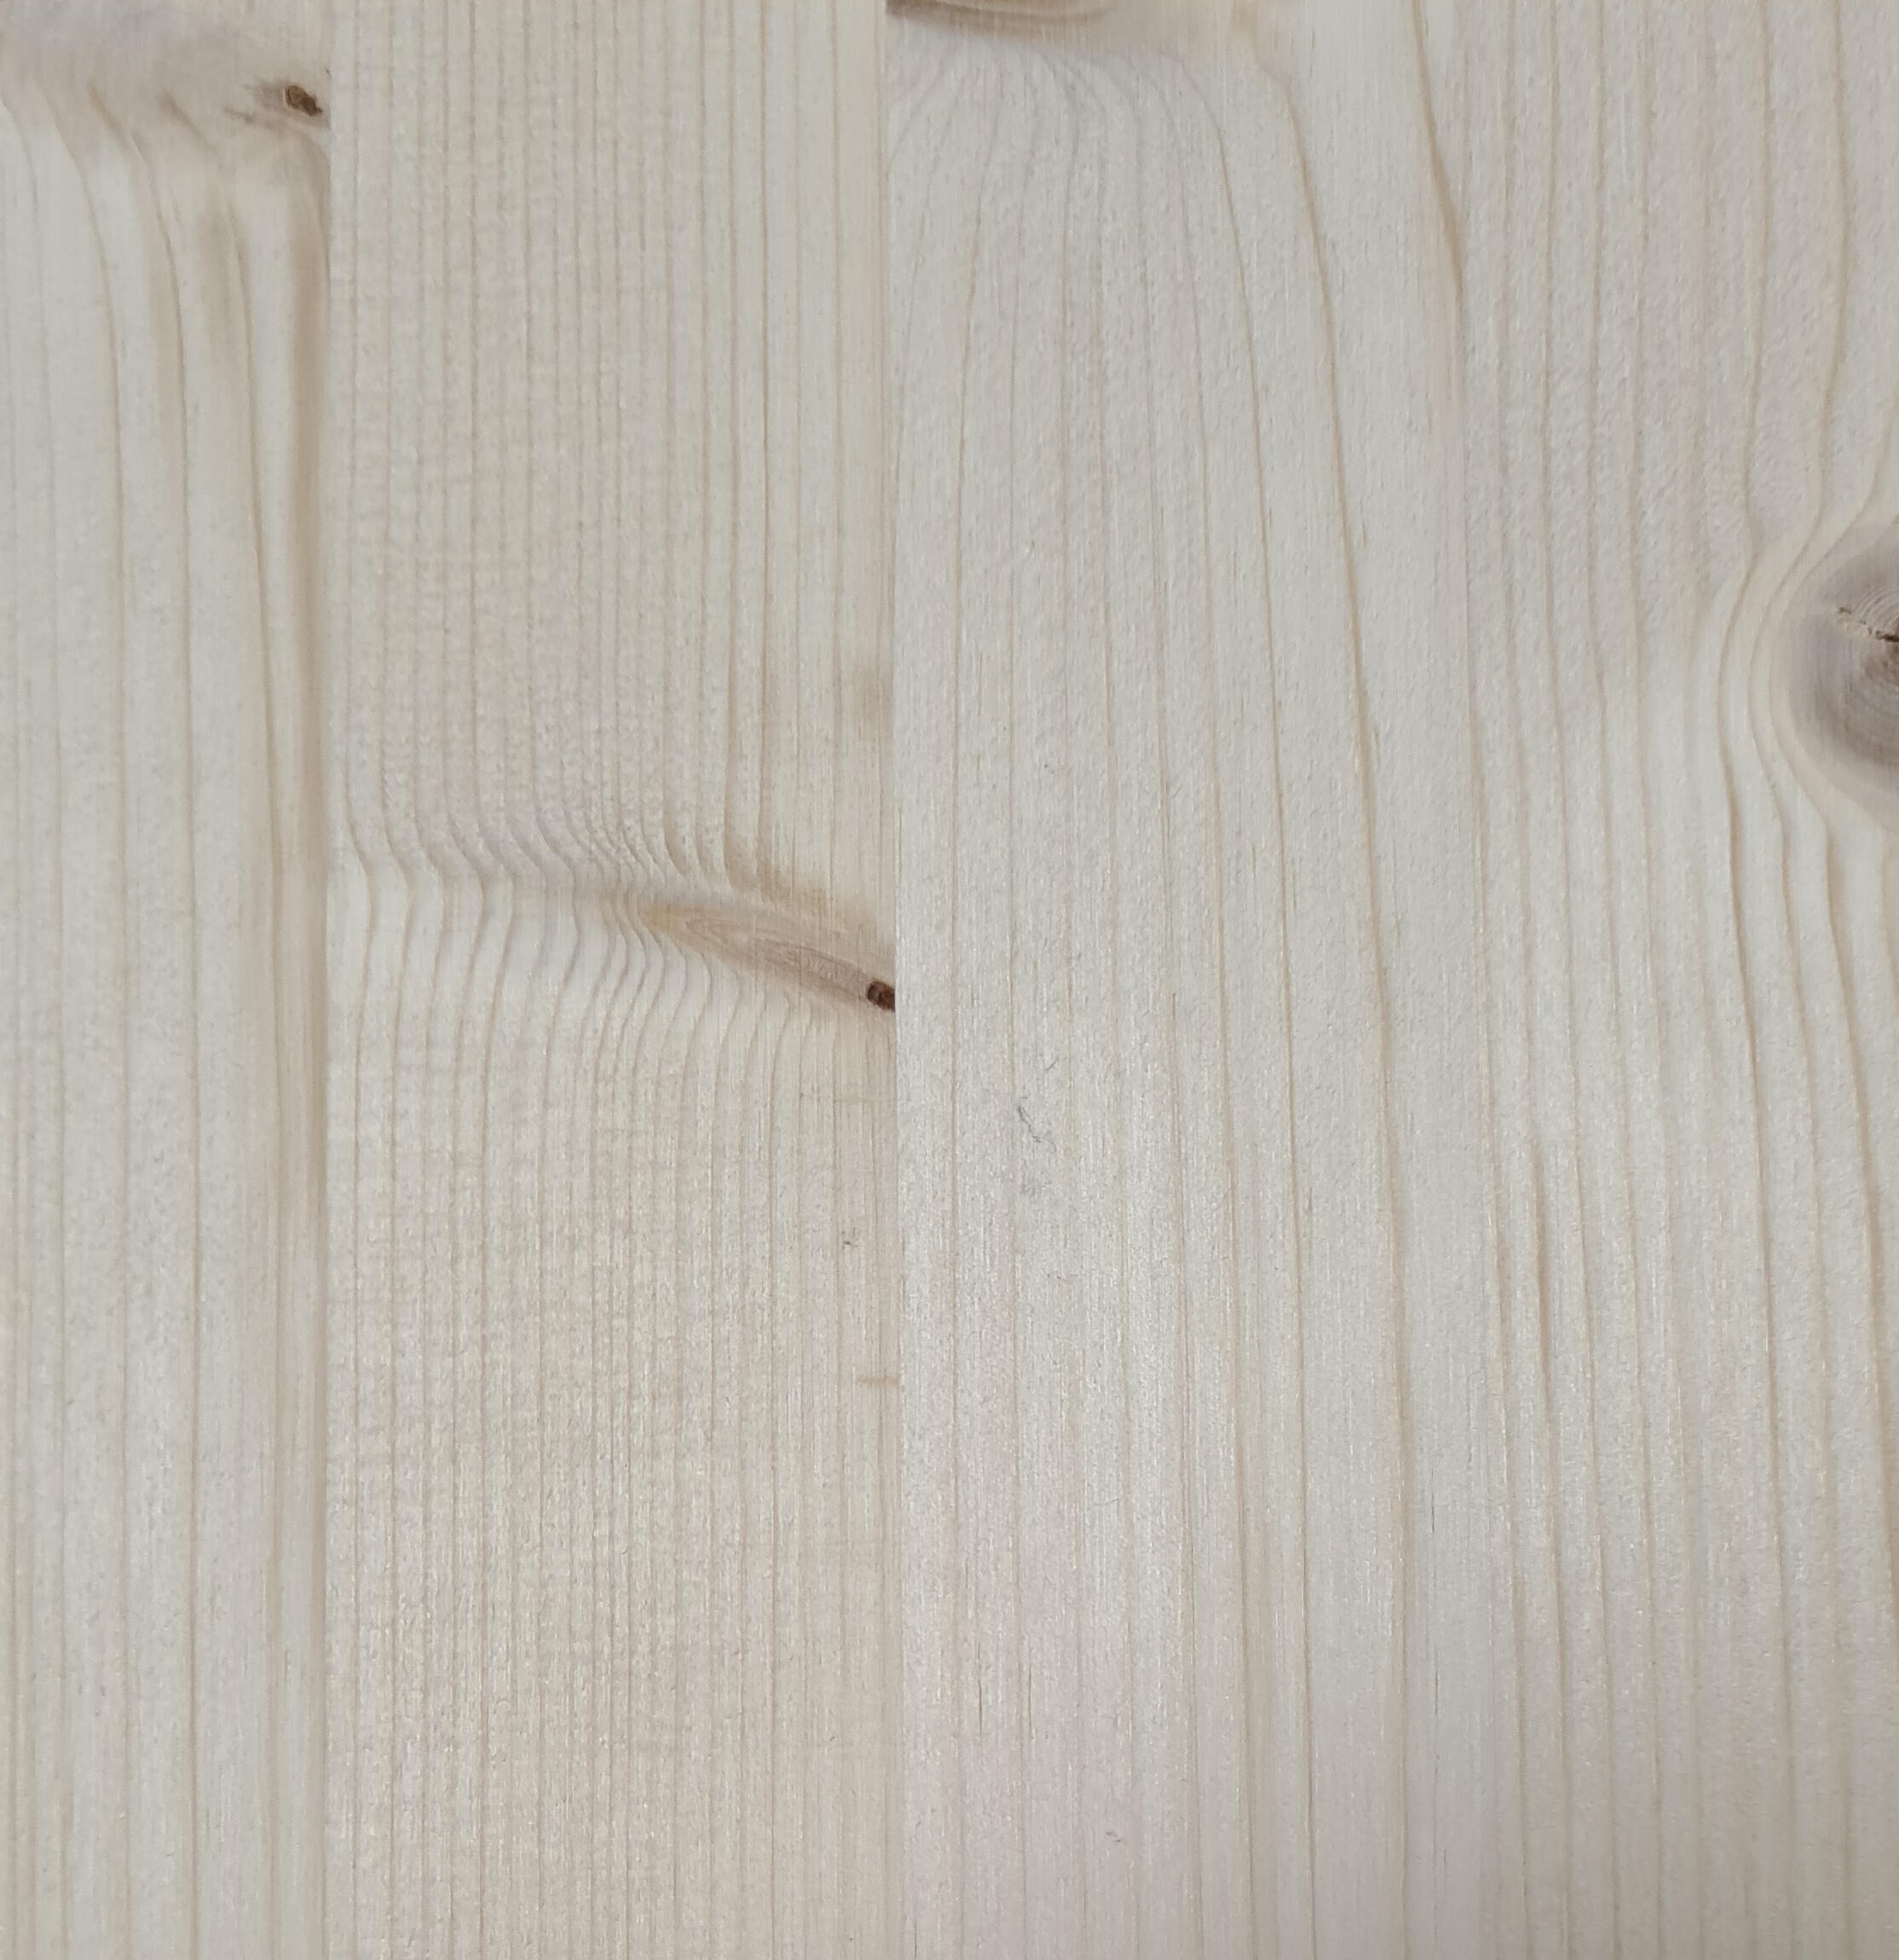 Tavola legno lamellare abete 1° scelta 250 x 60 cm Sp 27 mm - 2